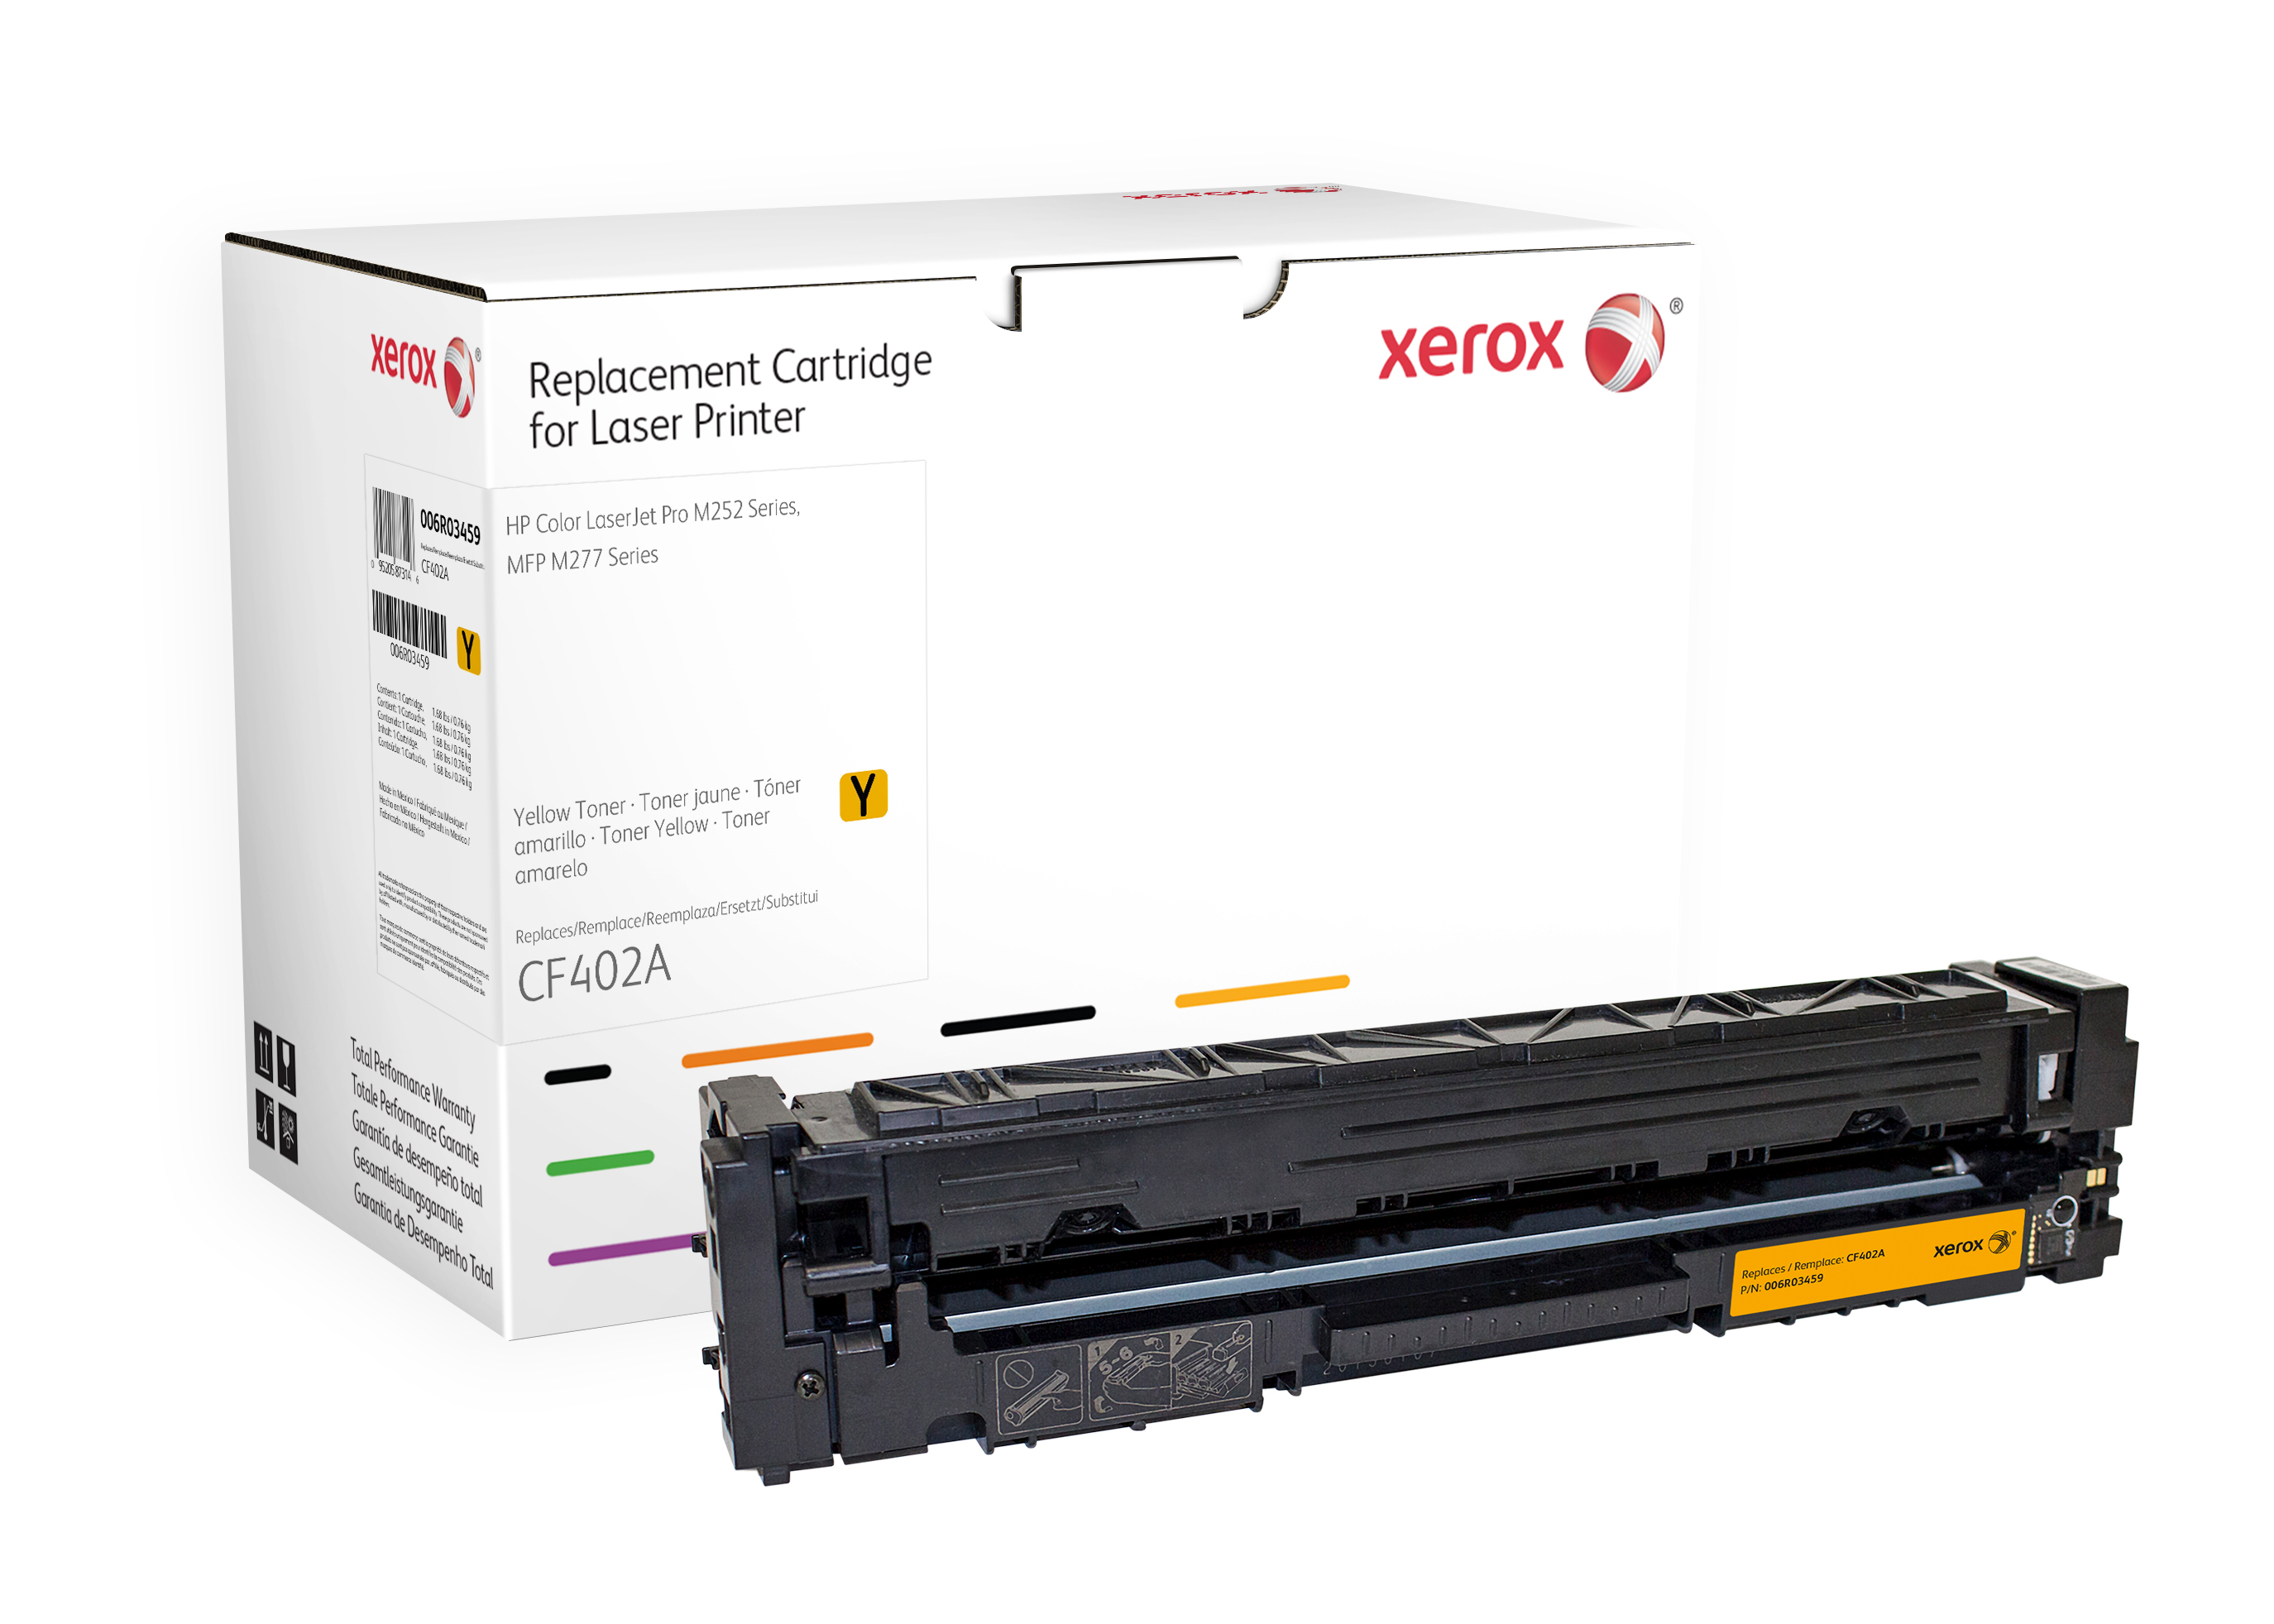 Xerox Gele toner cartridge. Gelijk aan HP CF402A. Compatibel met HP Colour LaserJet Pro M252, Colour LaserJet Pro M274, Colour LaserJet Pro M277